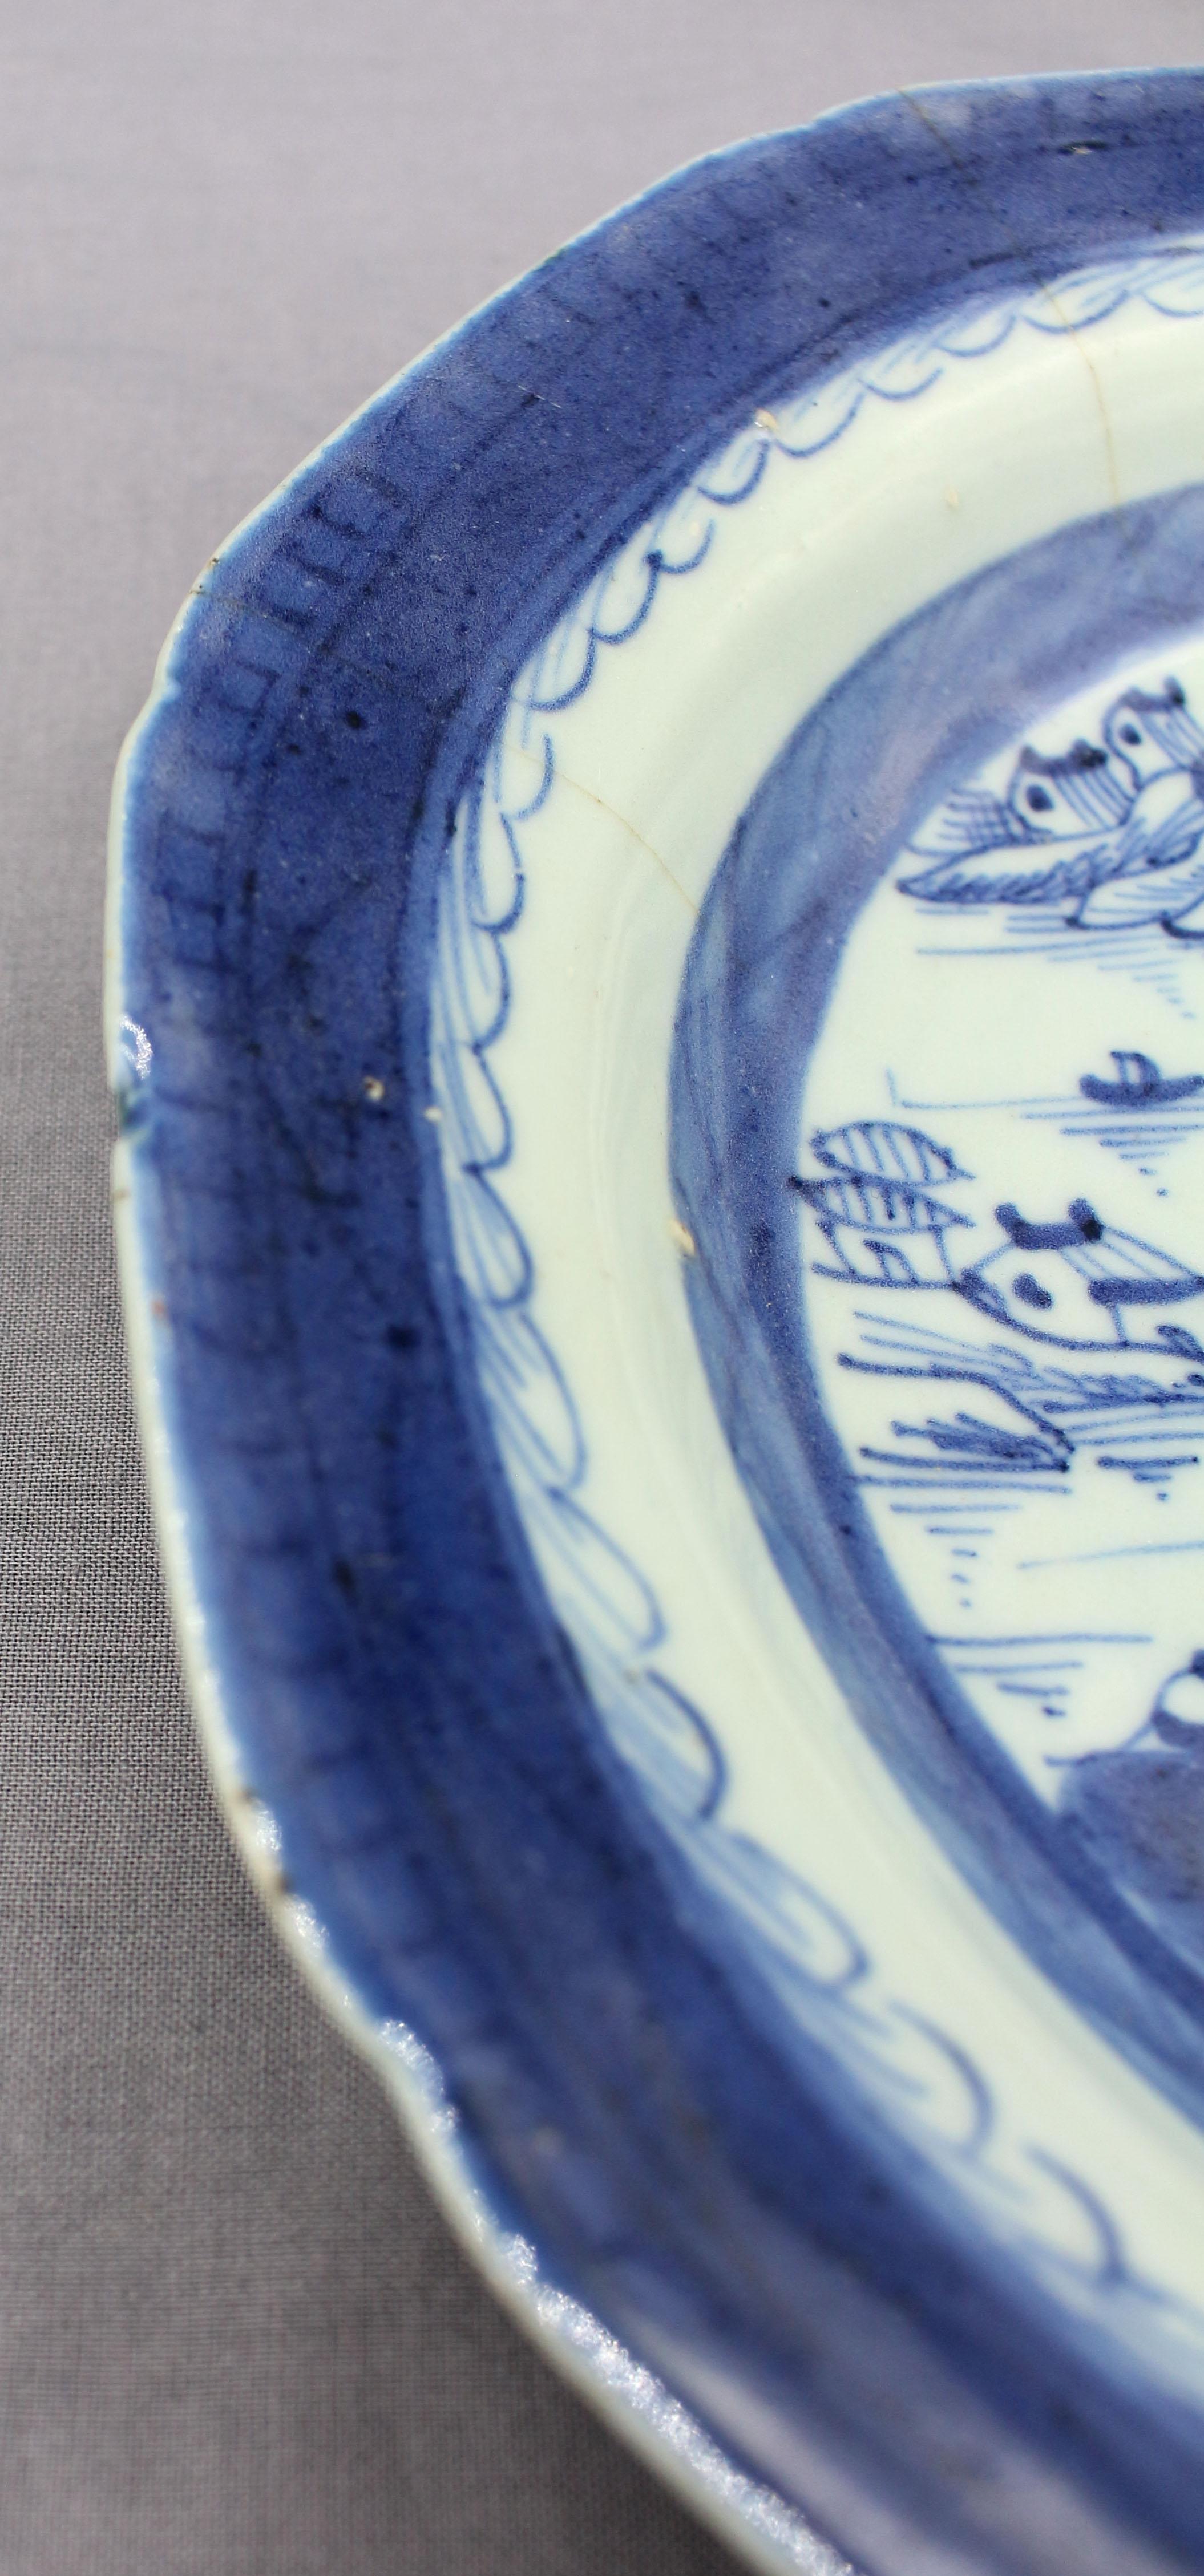 CIRCA 1800-1830 Paar Porzellan-Suppenteller, Blauer Kanton, chinesischer Export. Achteckige Form. Ein Exemplar mit kleiner Randabsplitterung, das andere mit einigen Chips; beide mit Haarlinien.
Ø 9